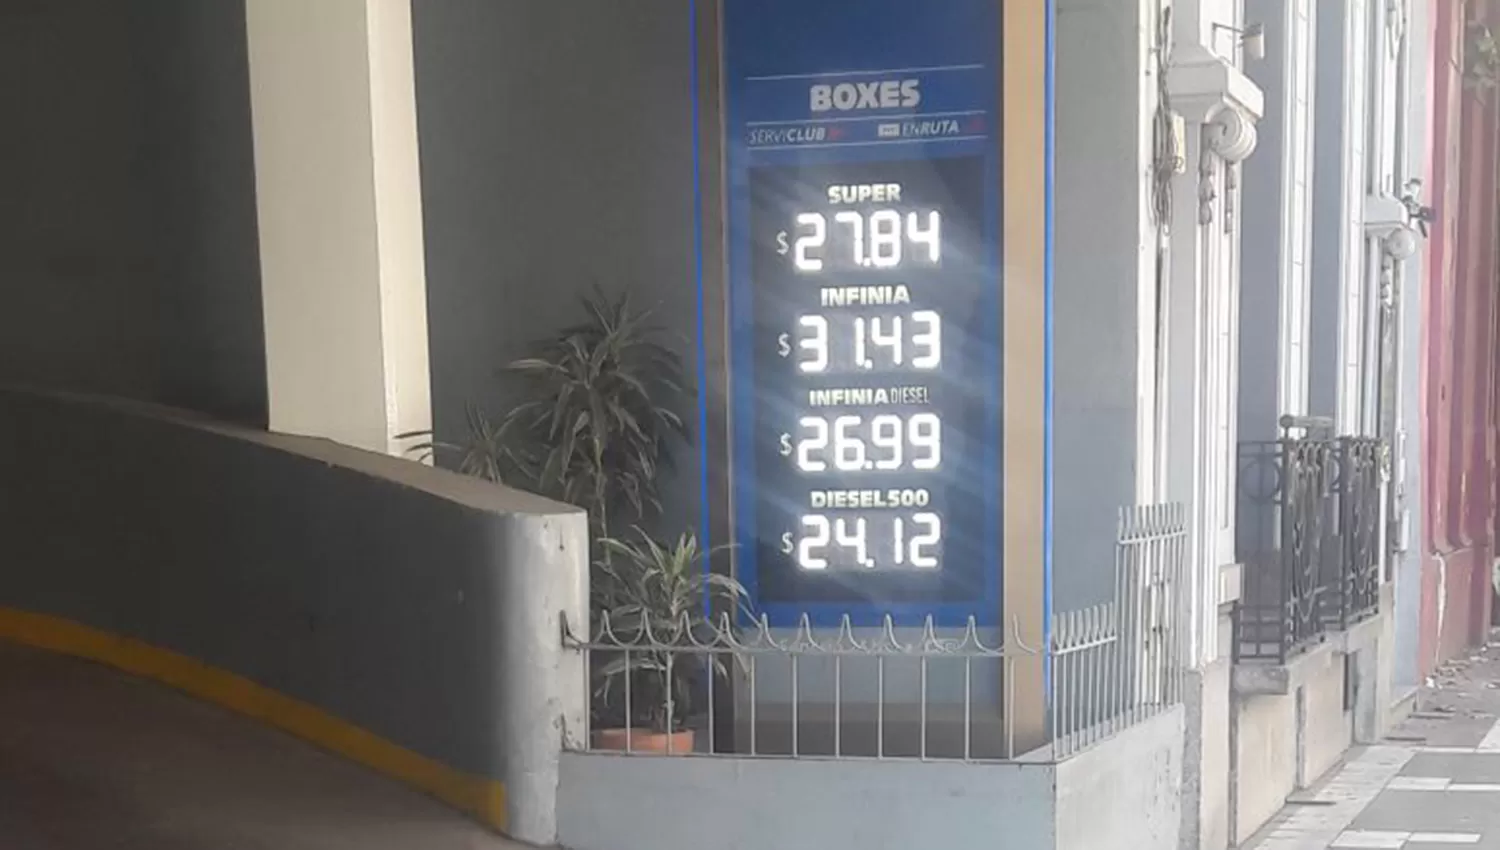 AUTOMÓVIL CLUB ARGENTINO. Los nuevos precios de las naftas de YPF en Tucumán. FOTO GENTILEZA PEDRO ROMANO